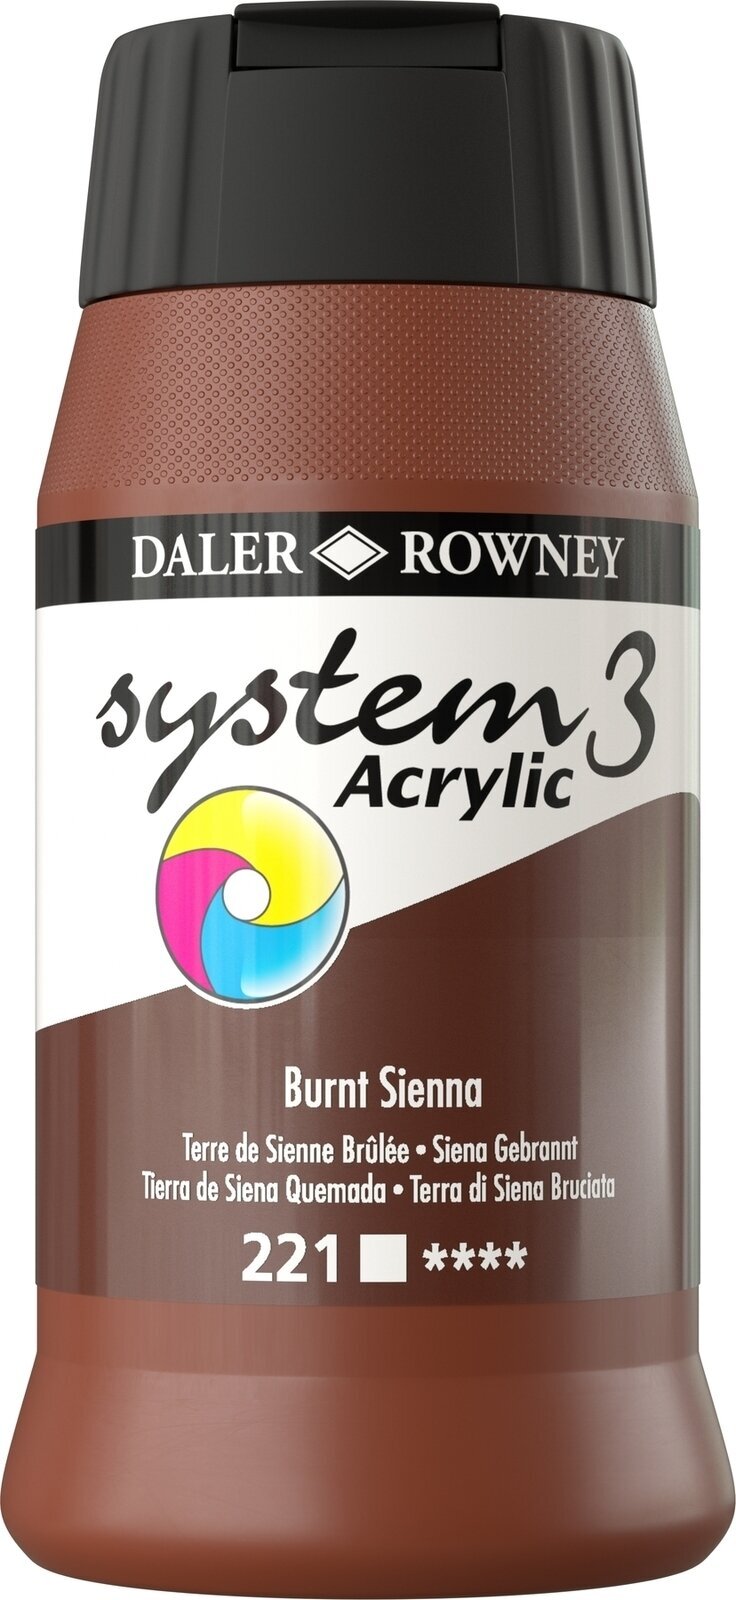 Tinta acrílica Daler Rowney System3 Tinta acrílica Burnt Sienna 500 ml 1 un.